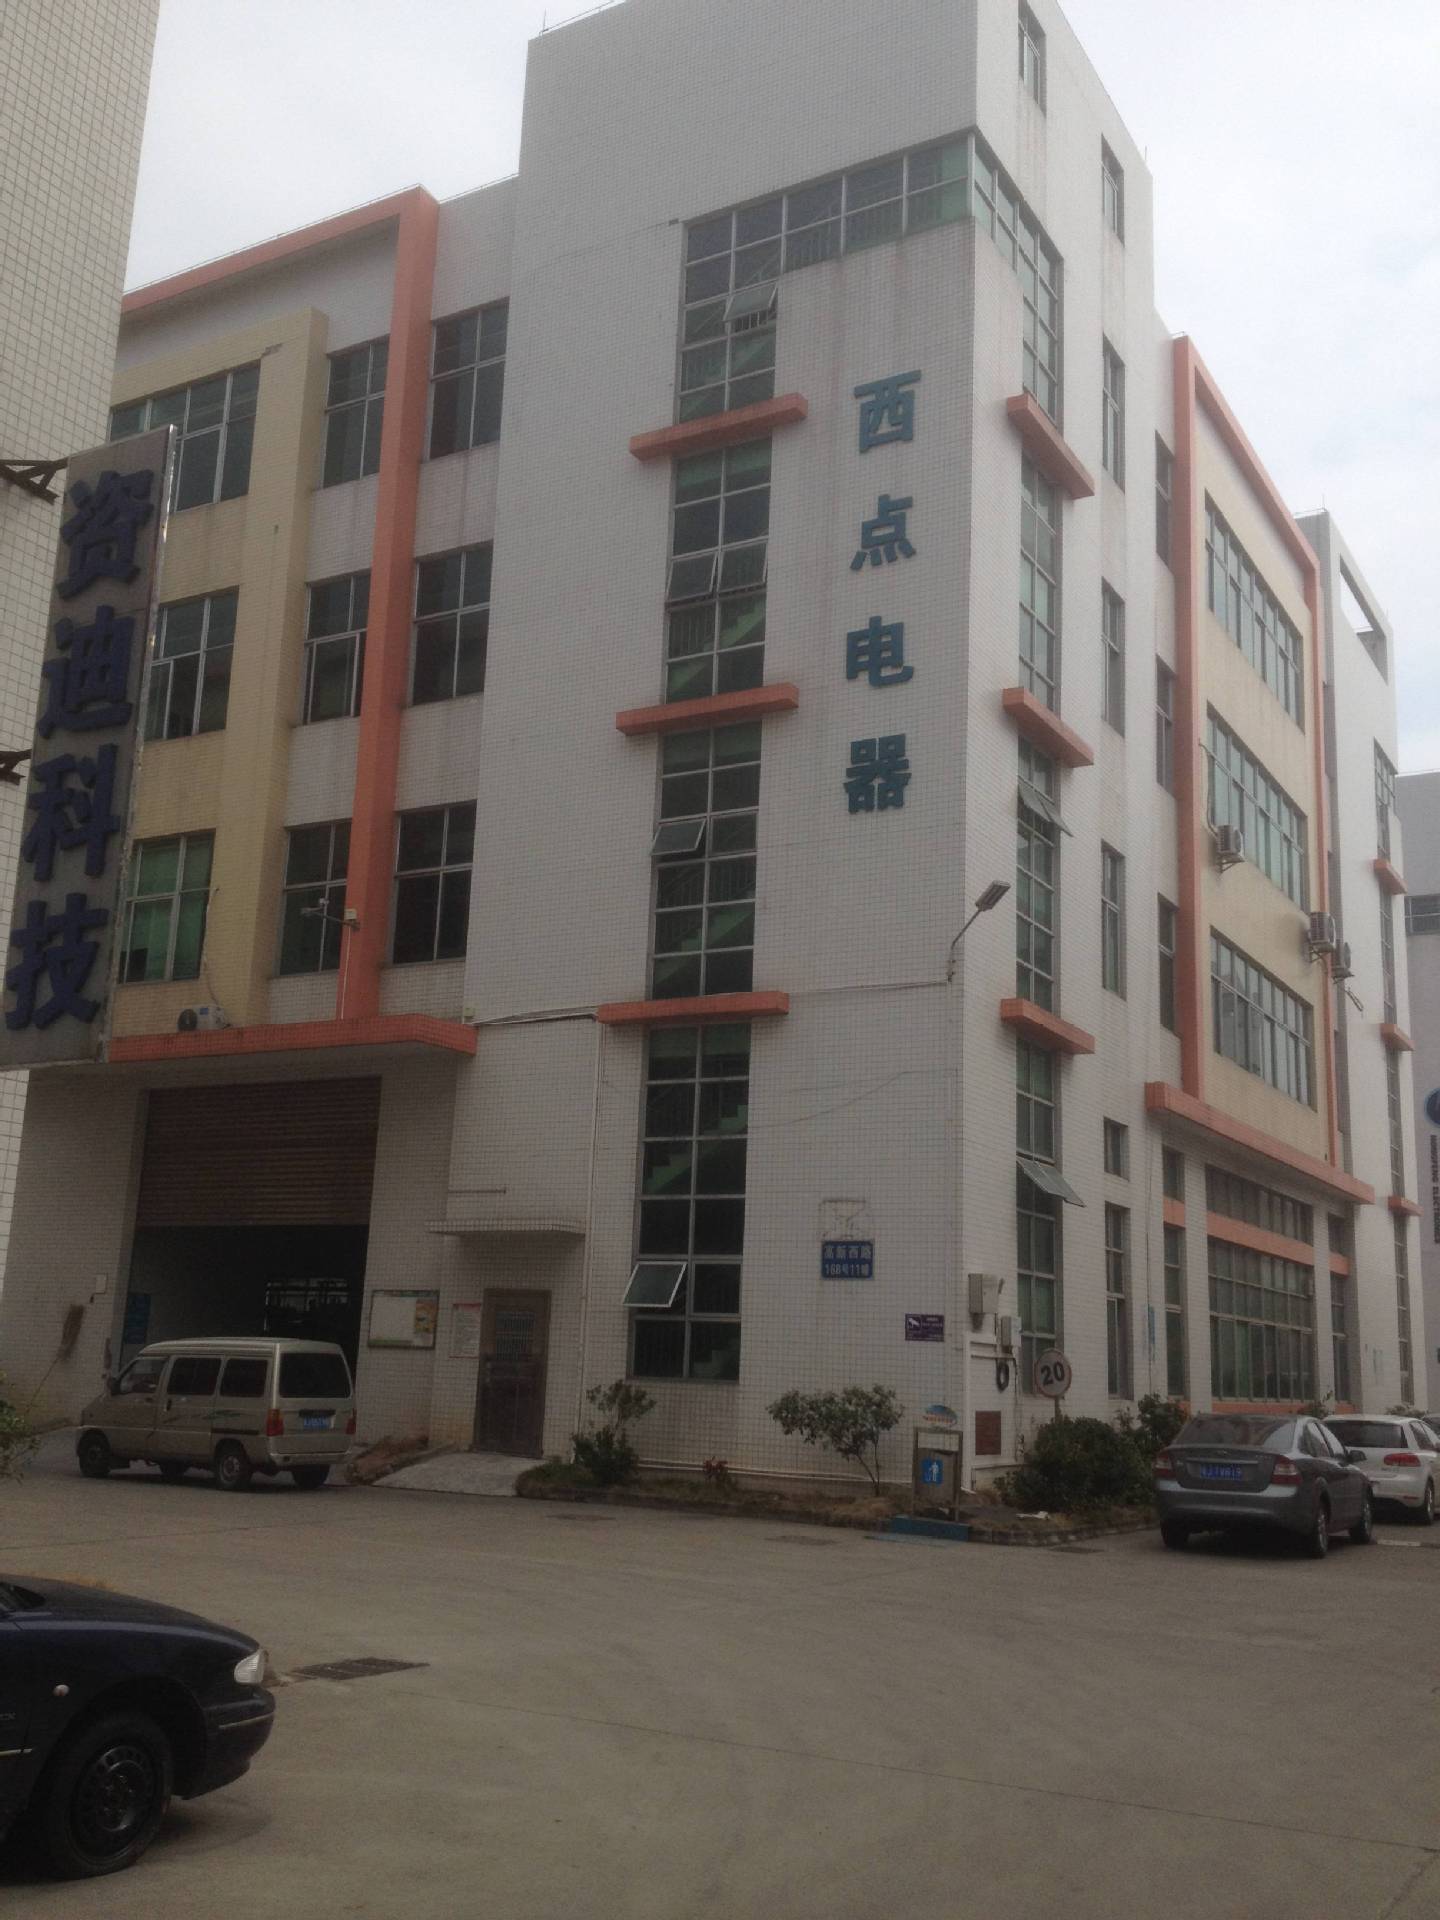 Jiangmen Xidian Electrical Technology Co., Ltd